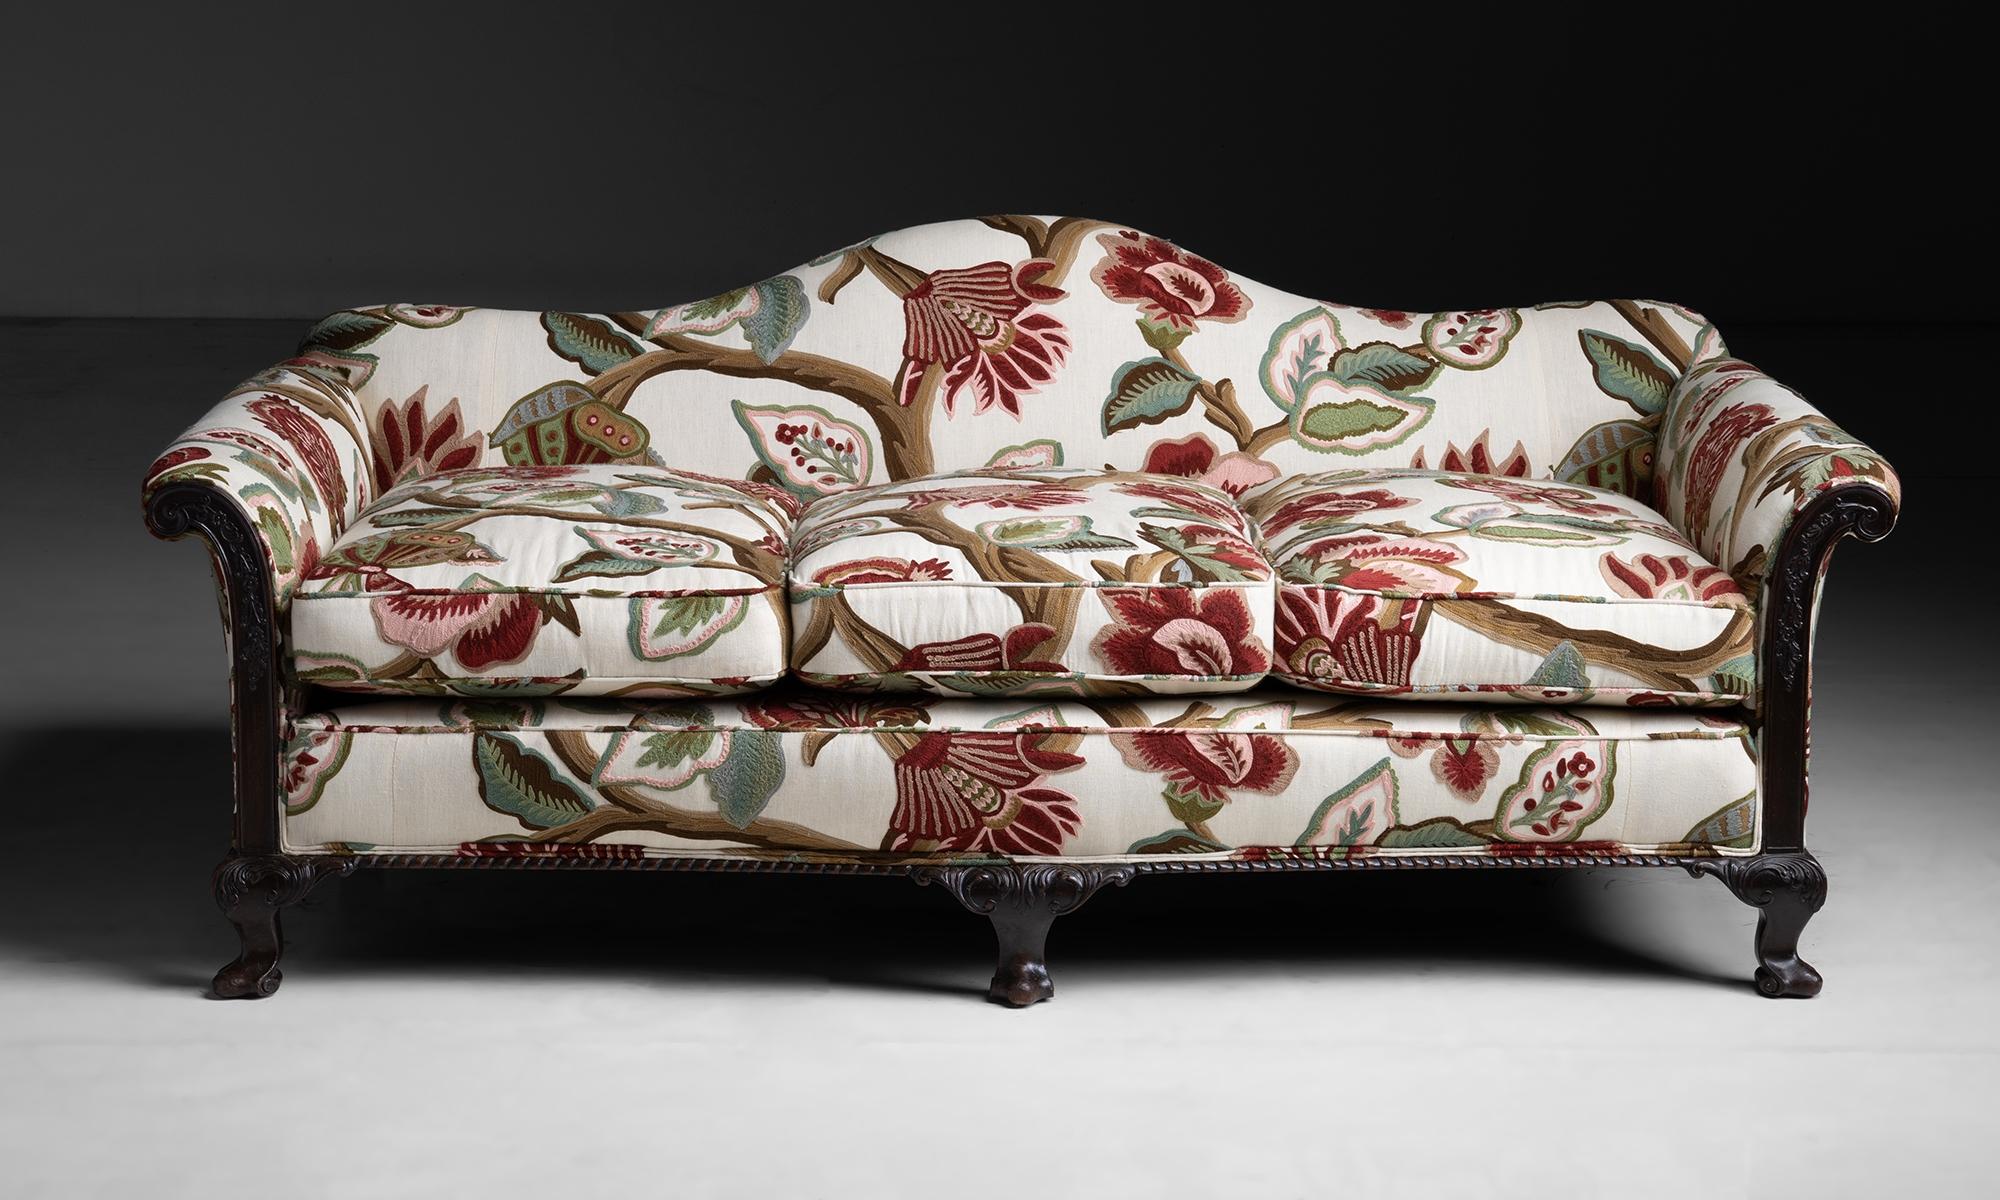 Sofa aus besticktem Leinen von Pierre Frey

England um 1900

Niedriges Kamelrückensofa mit geschnitztem Holzrahmen. Neu bezogen mit blumenbesticktem Leinen.

73,5 